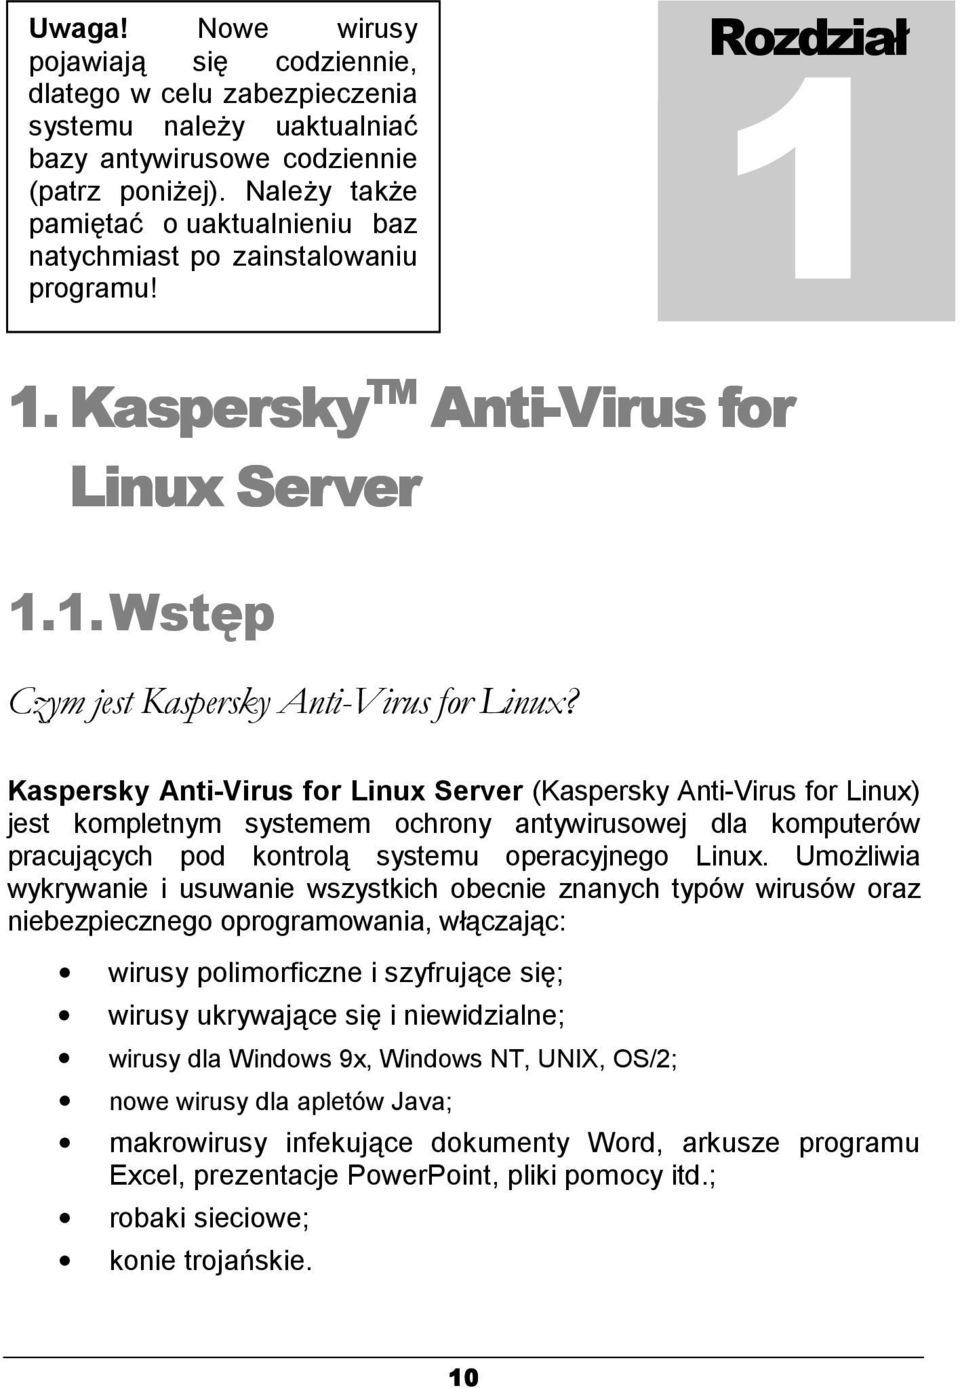 Kaspersky Anti-Virus for Linux Server (Kaspersky Anti-Virus for Linux) jest kompletnym systemem ochrony antywirusowej dla komputerów pracujących pod kontrolą systemu operacyjnego Linux.